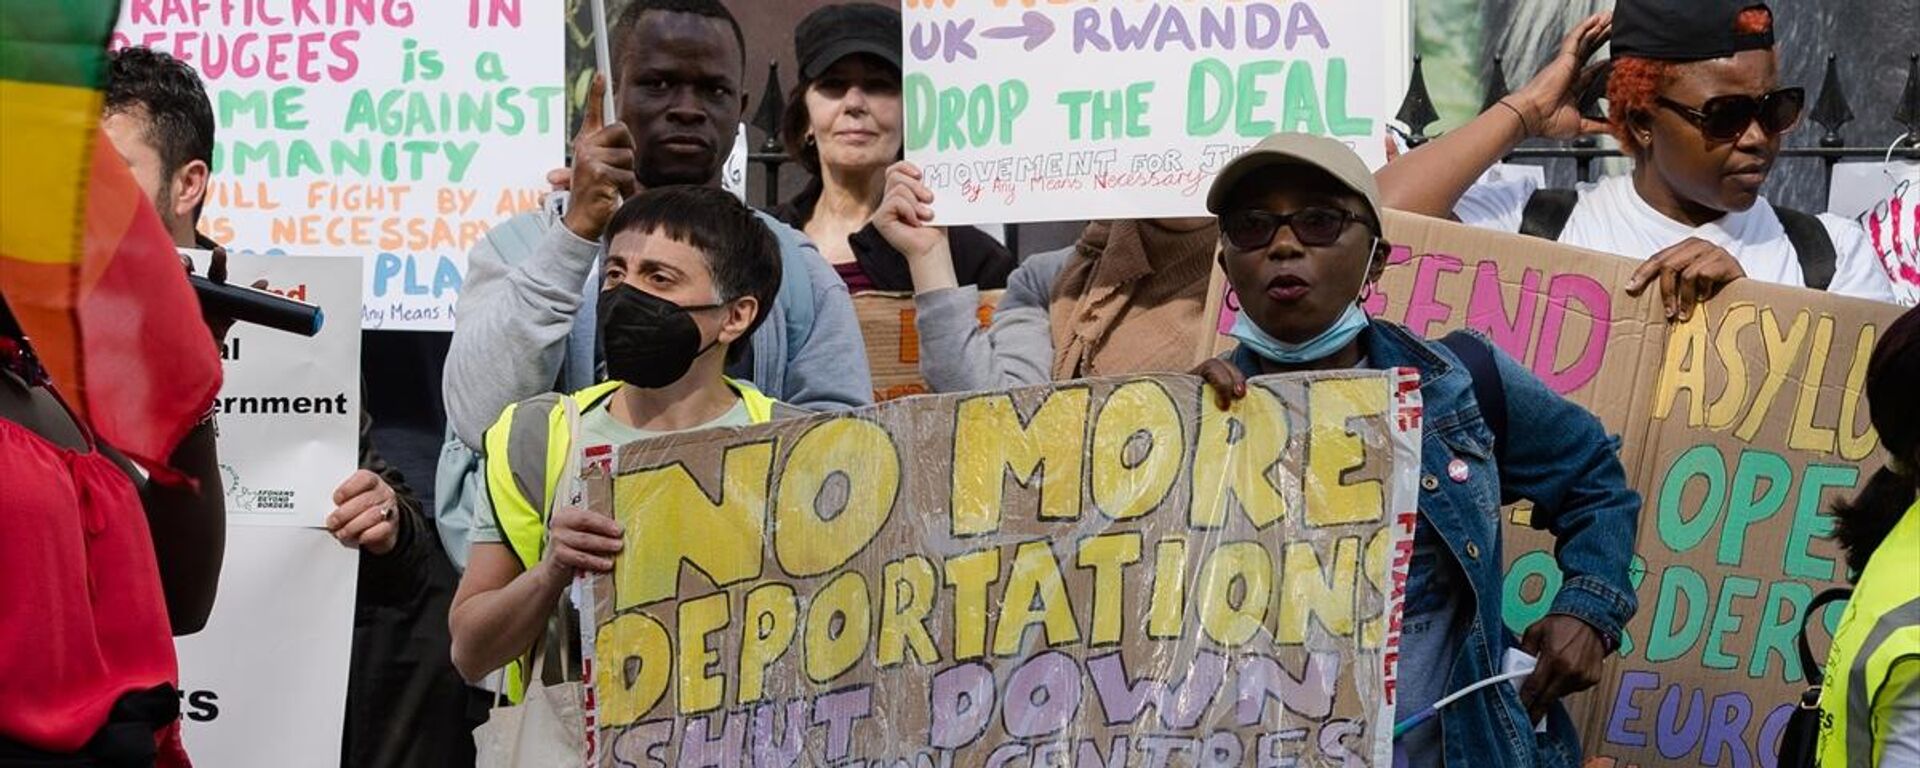 İngiltere'nin düzensiz göçmenleri Ruanda'ya gönderme planı protesto edildi - Sputnik Türkiye, 1920, 15.06.2022